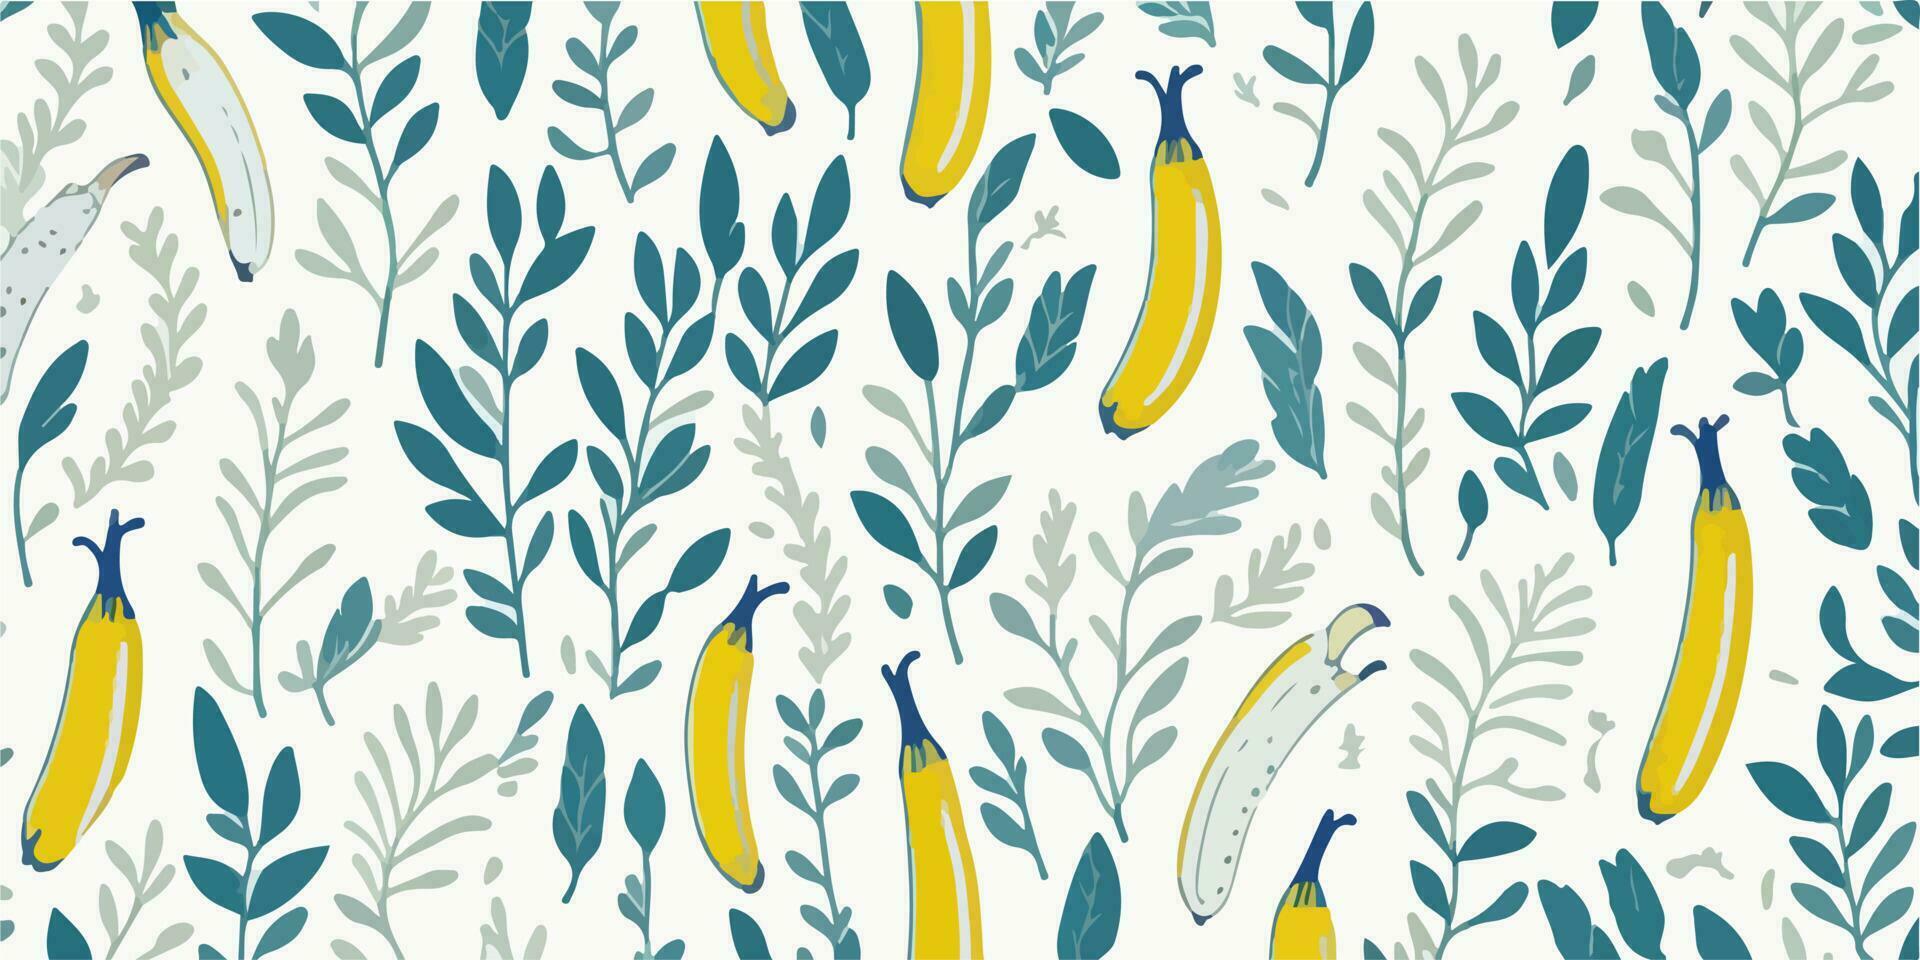 tropical fantaisie, de bonne humeur vecteur illustration de banane motifs